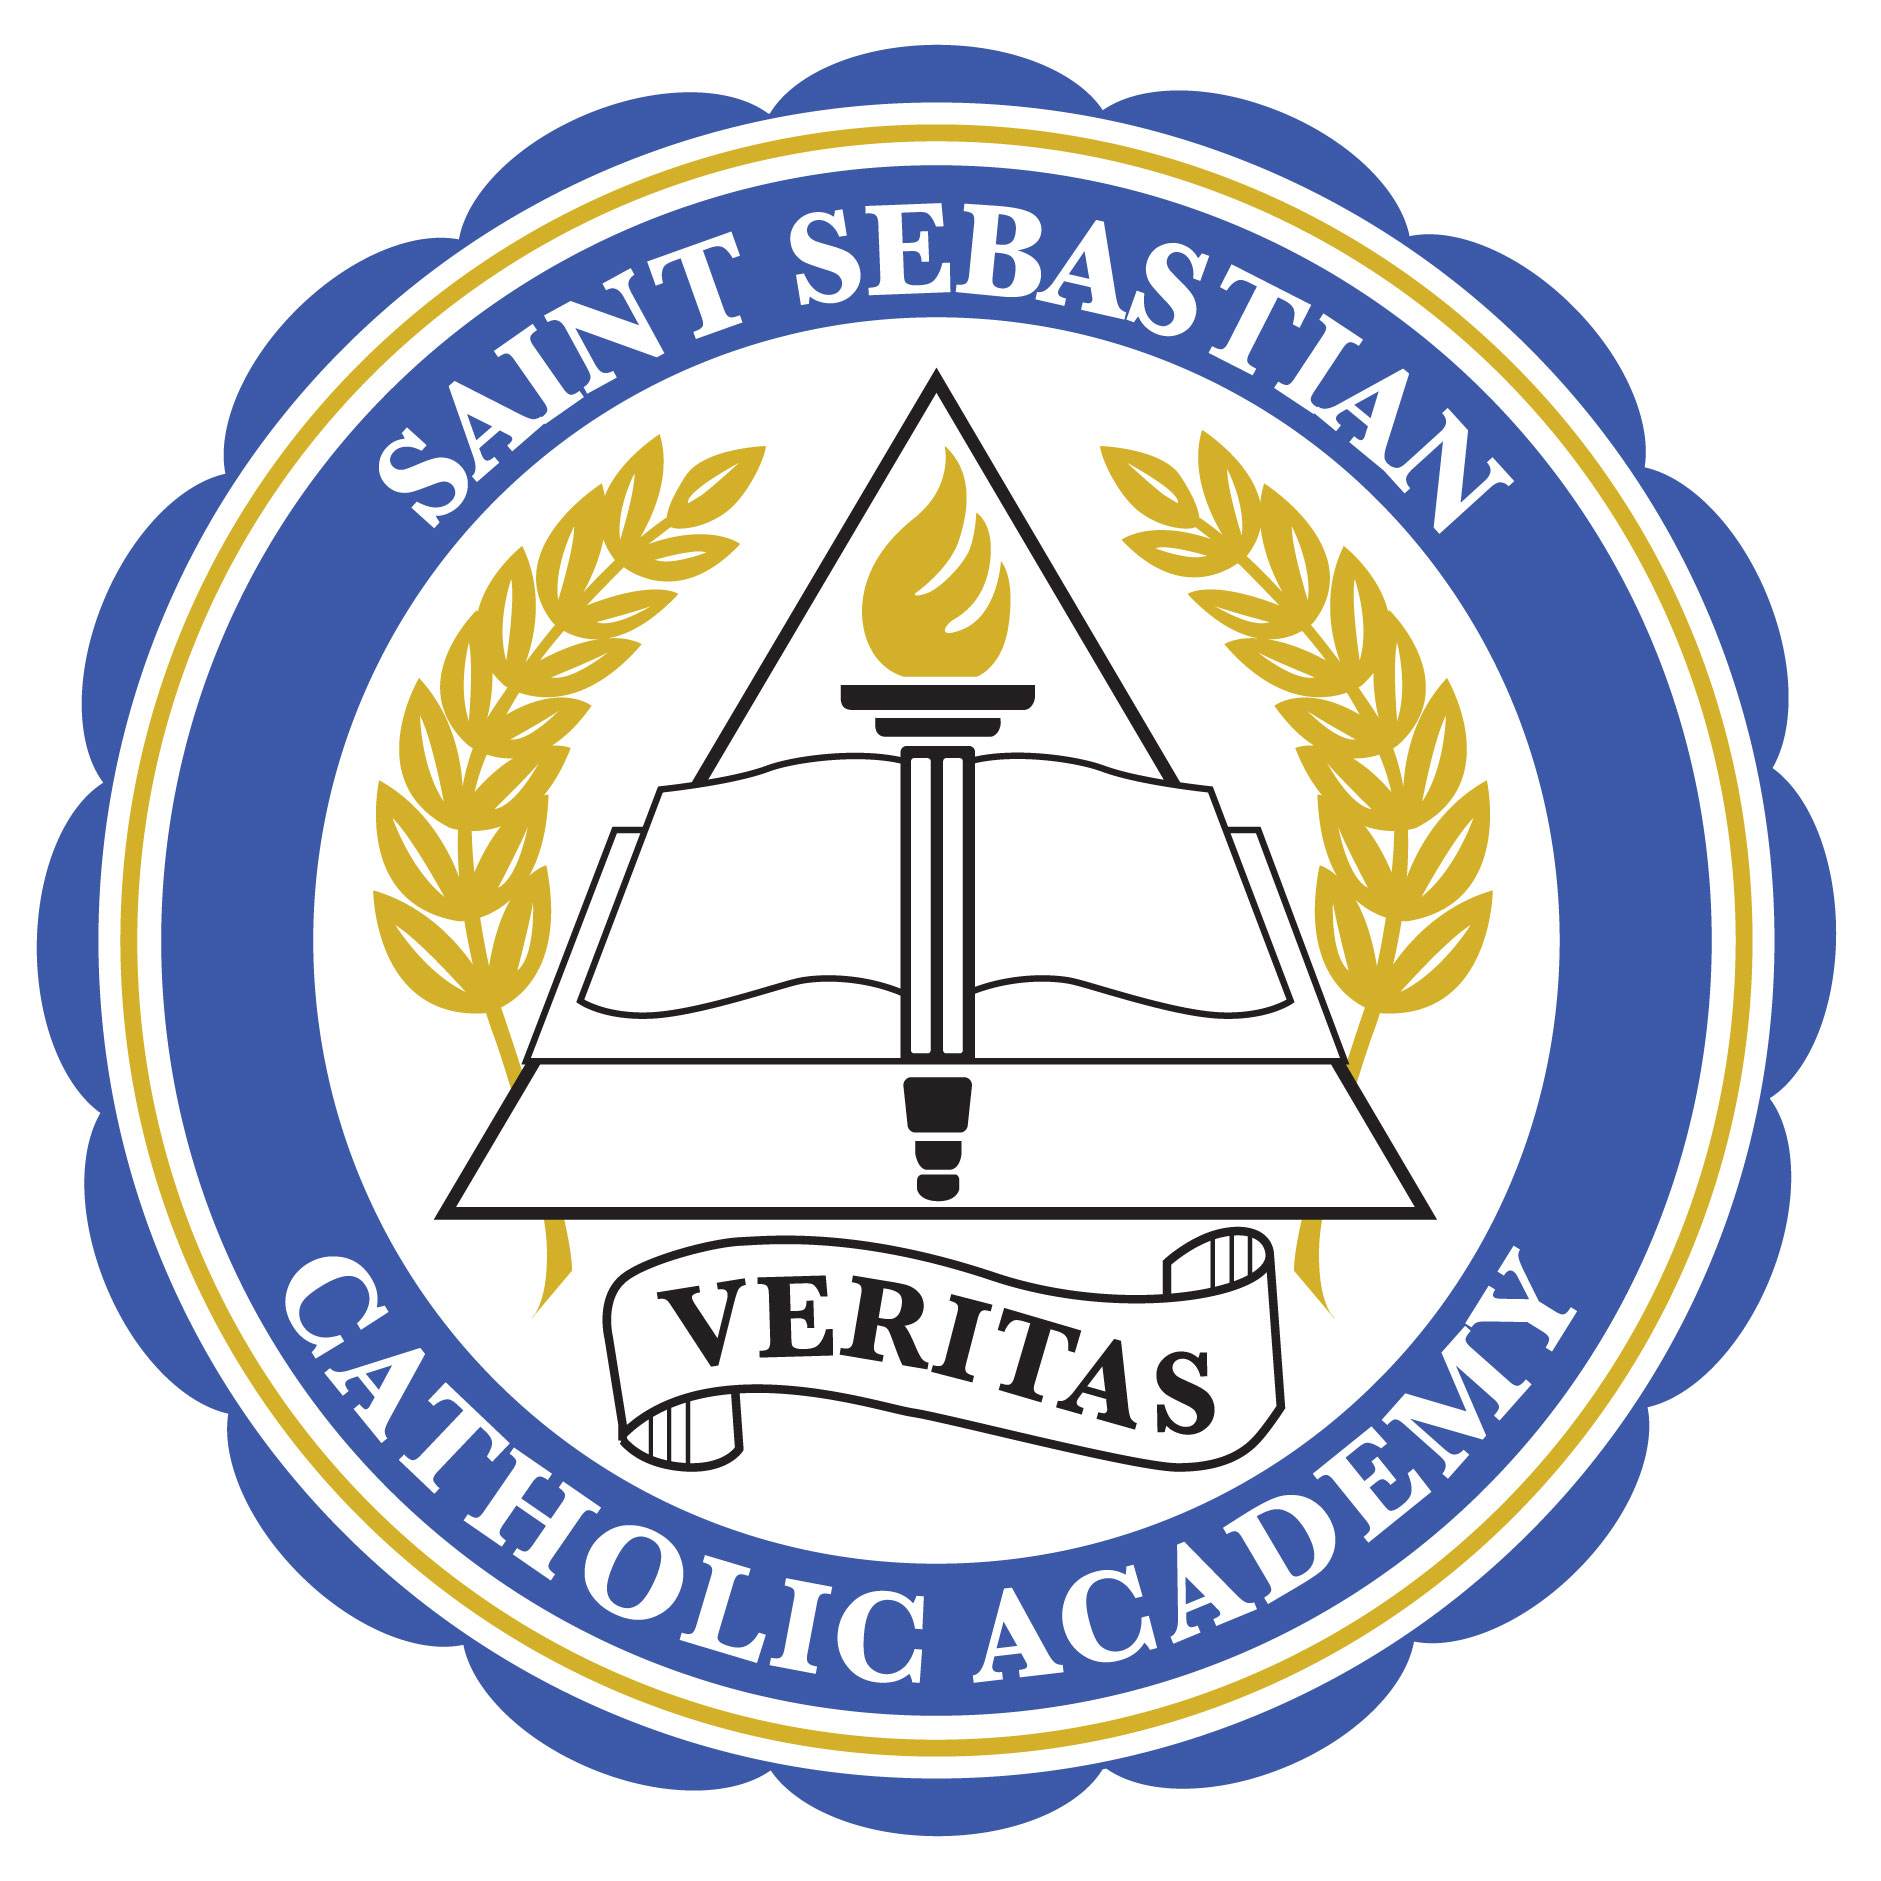 St. Sebastian Catholic Academy 